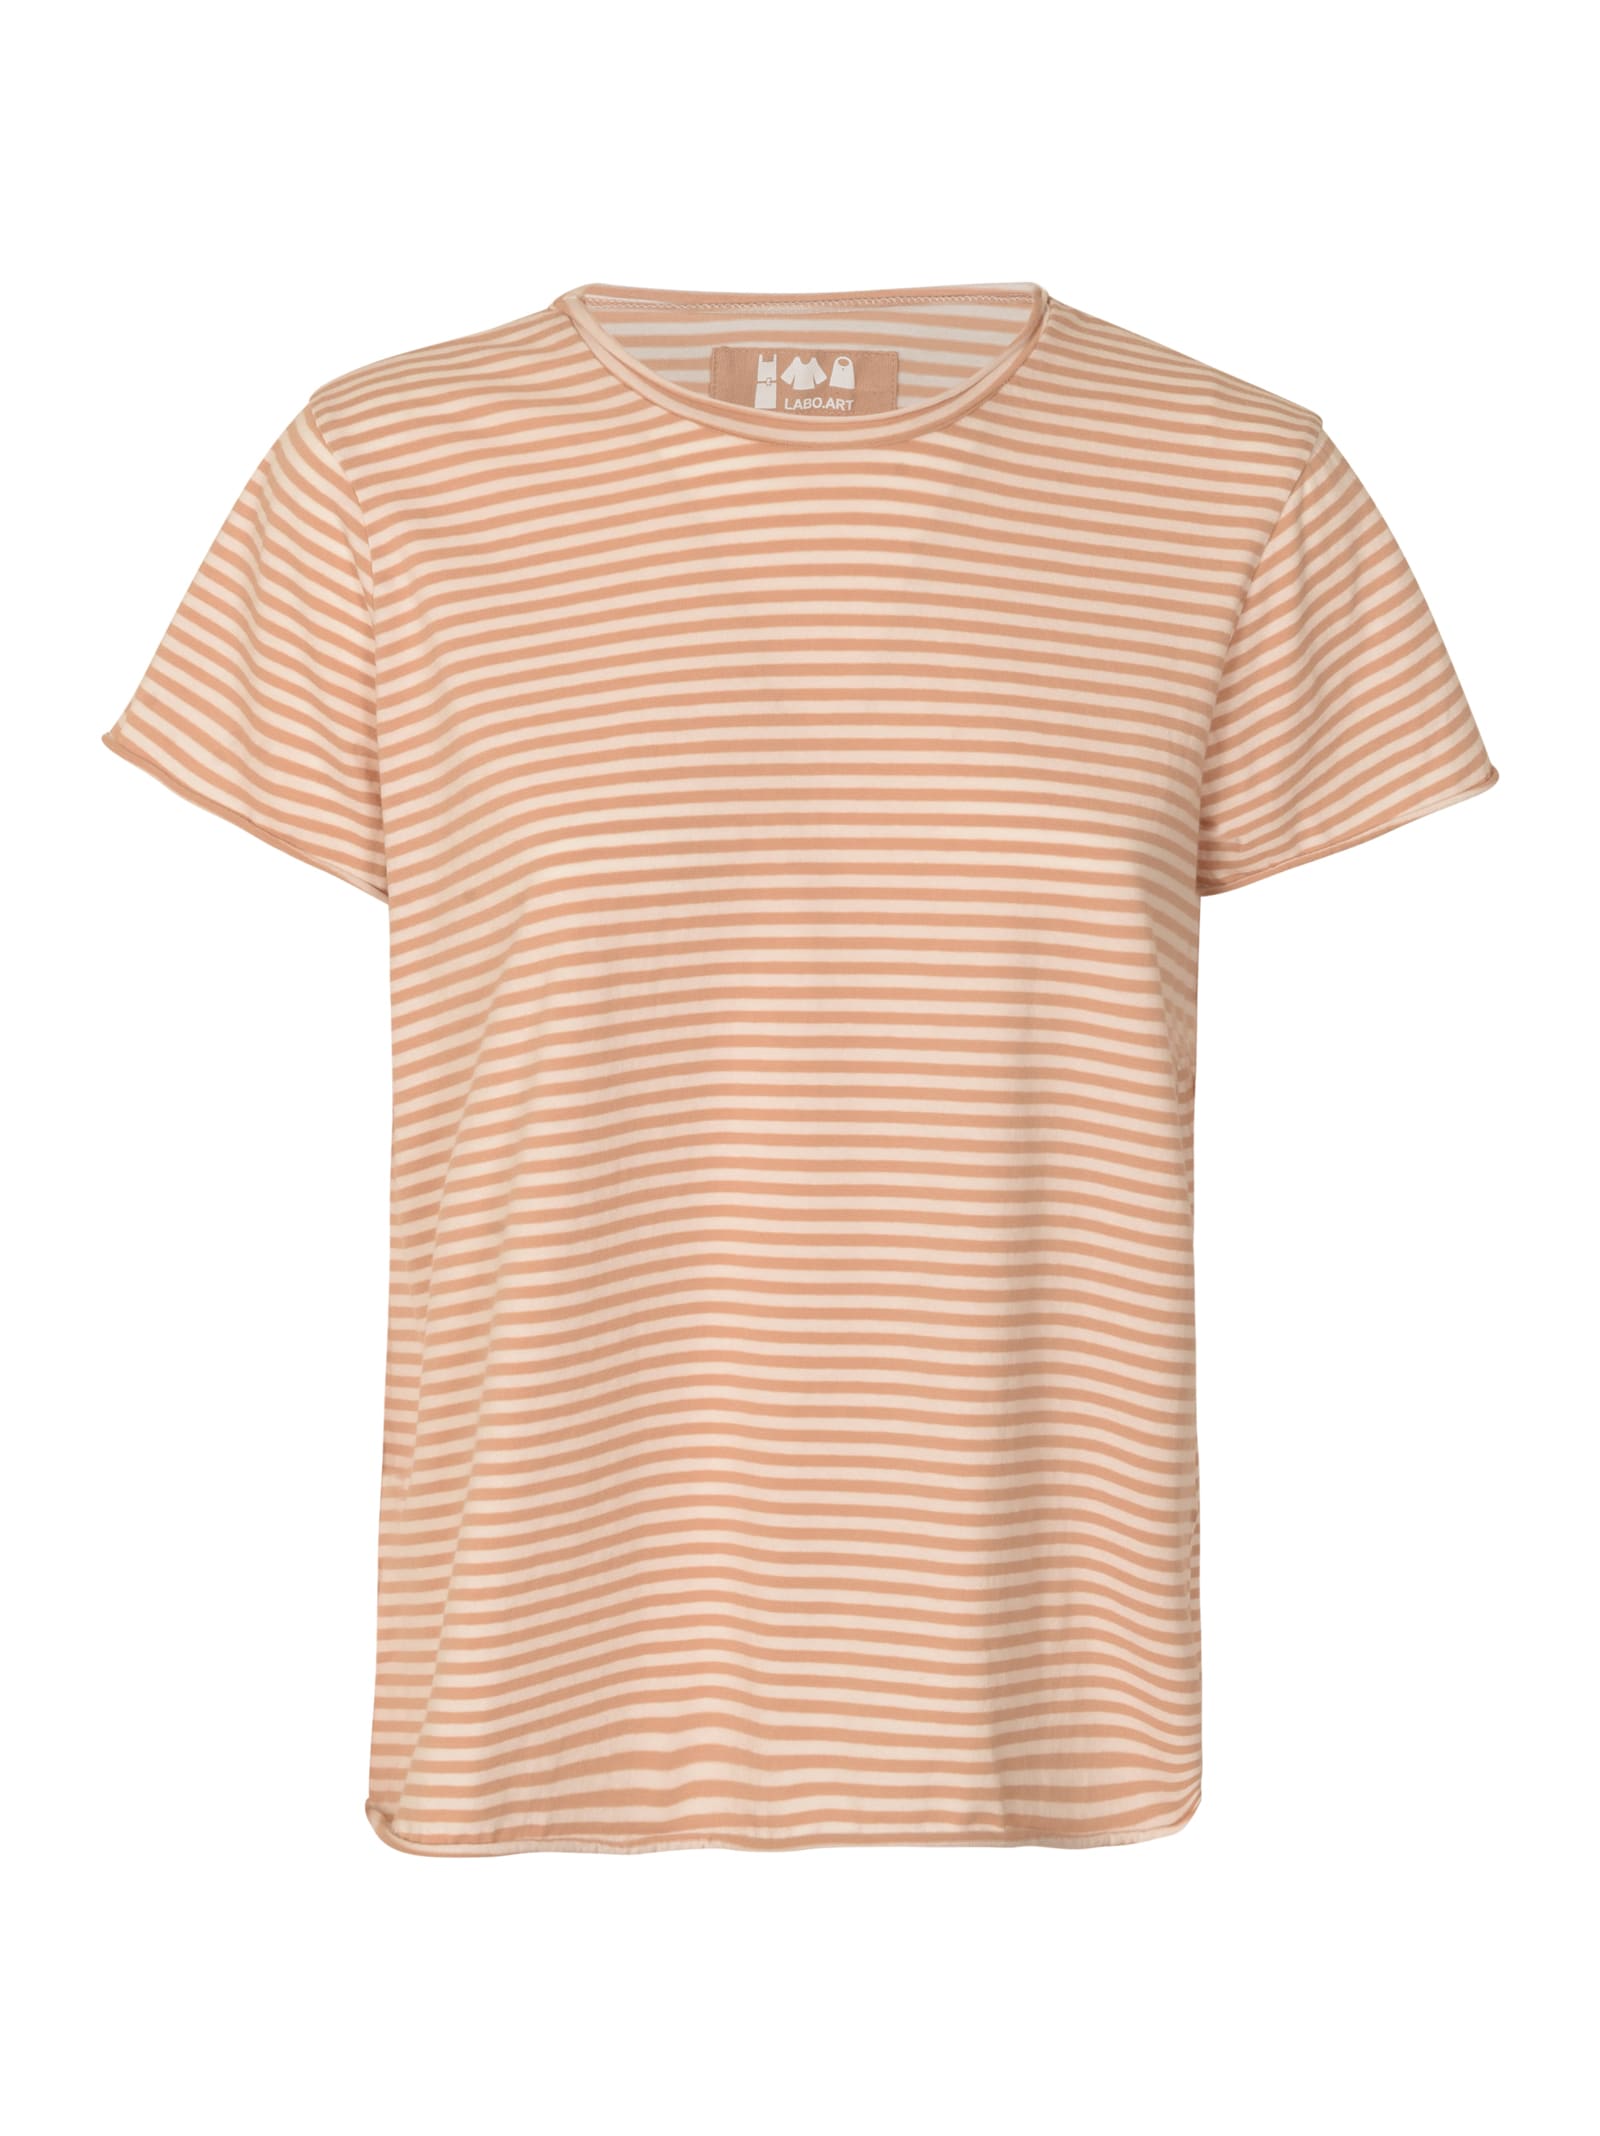 Labo.Art Stripe T-shirt